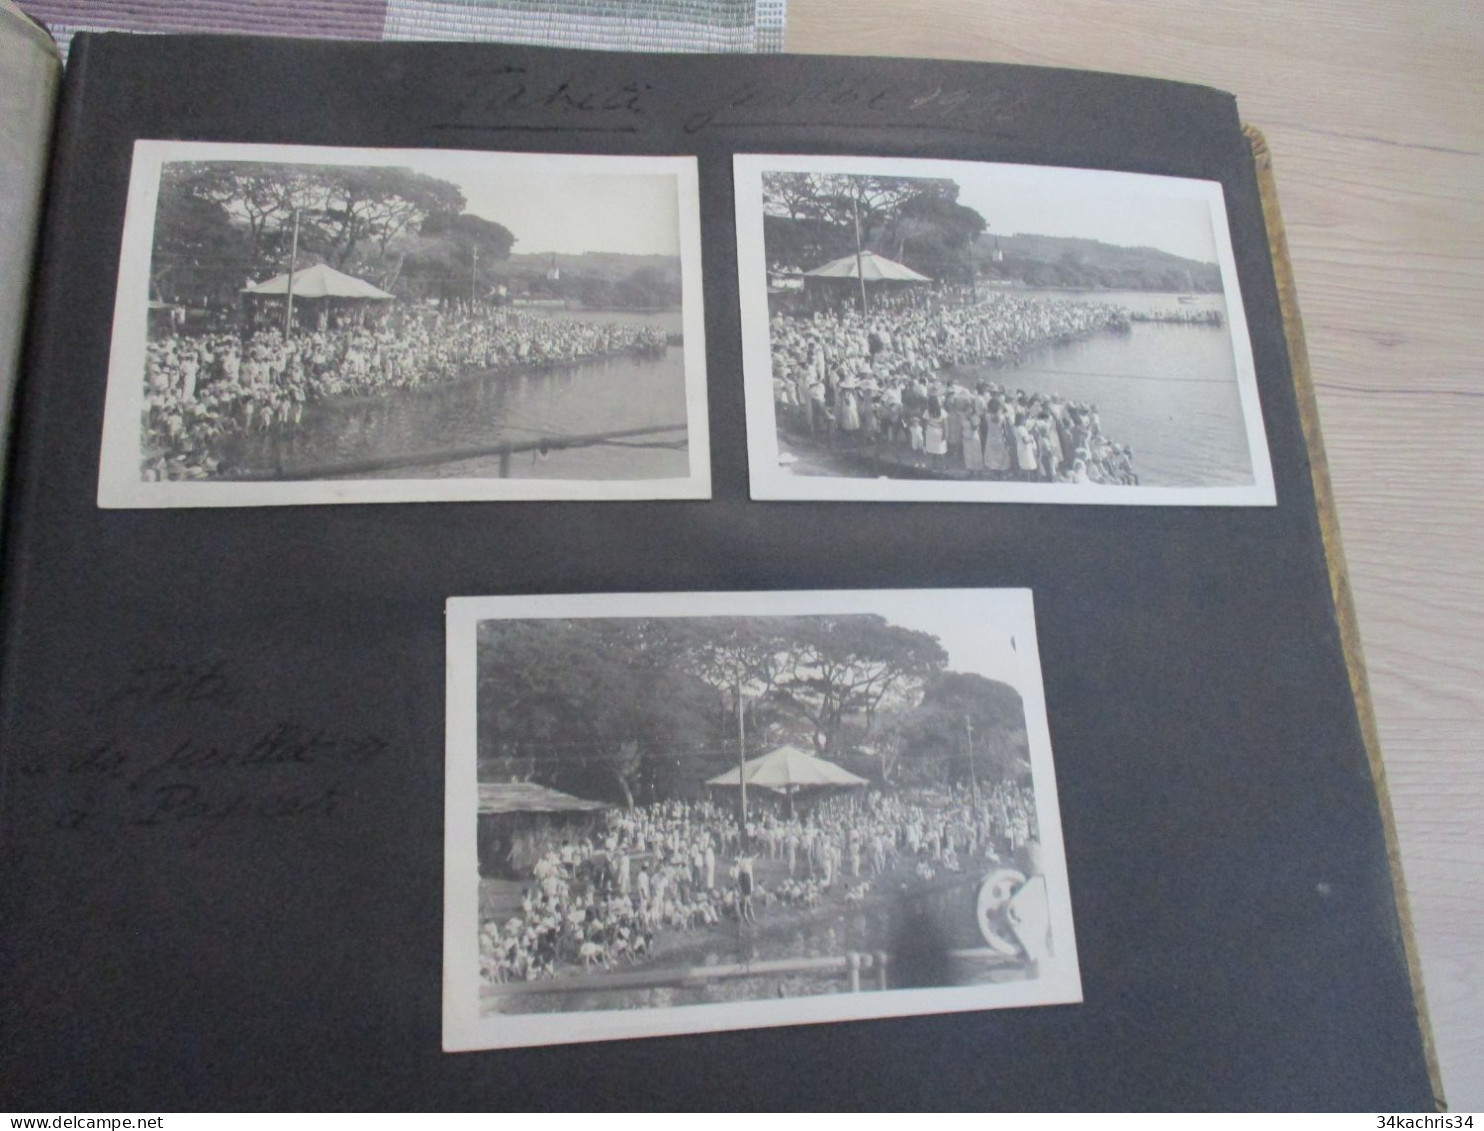 Album voyage  Sarvognan de Brazza  Campagne 1936 87 photos originales Wallis Auckland  Tahiti Tubuac Rapa .....